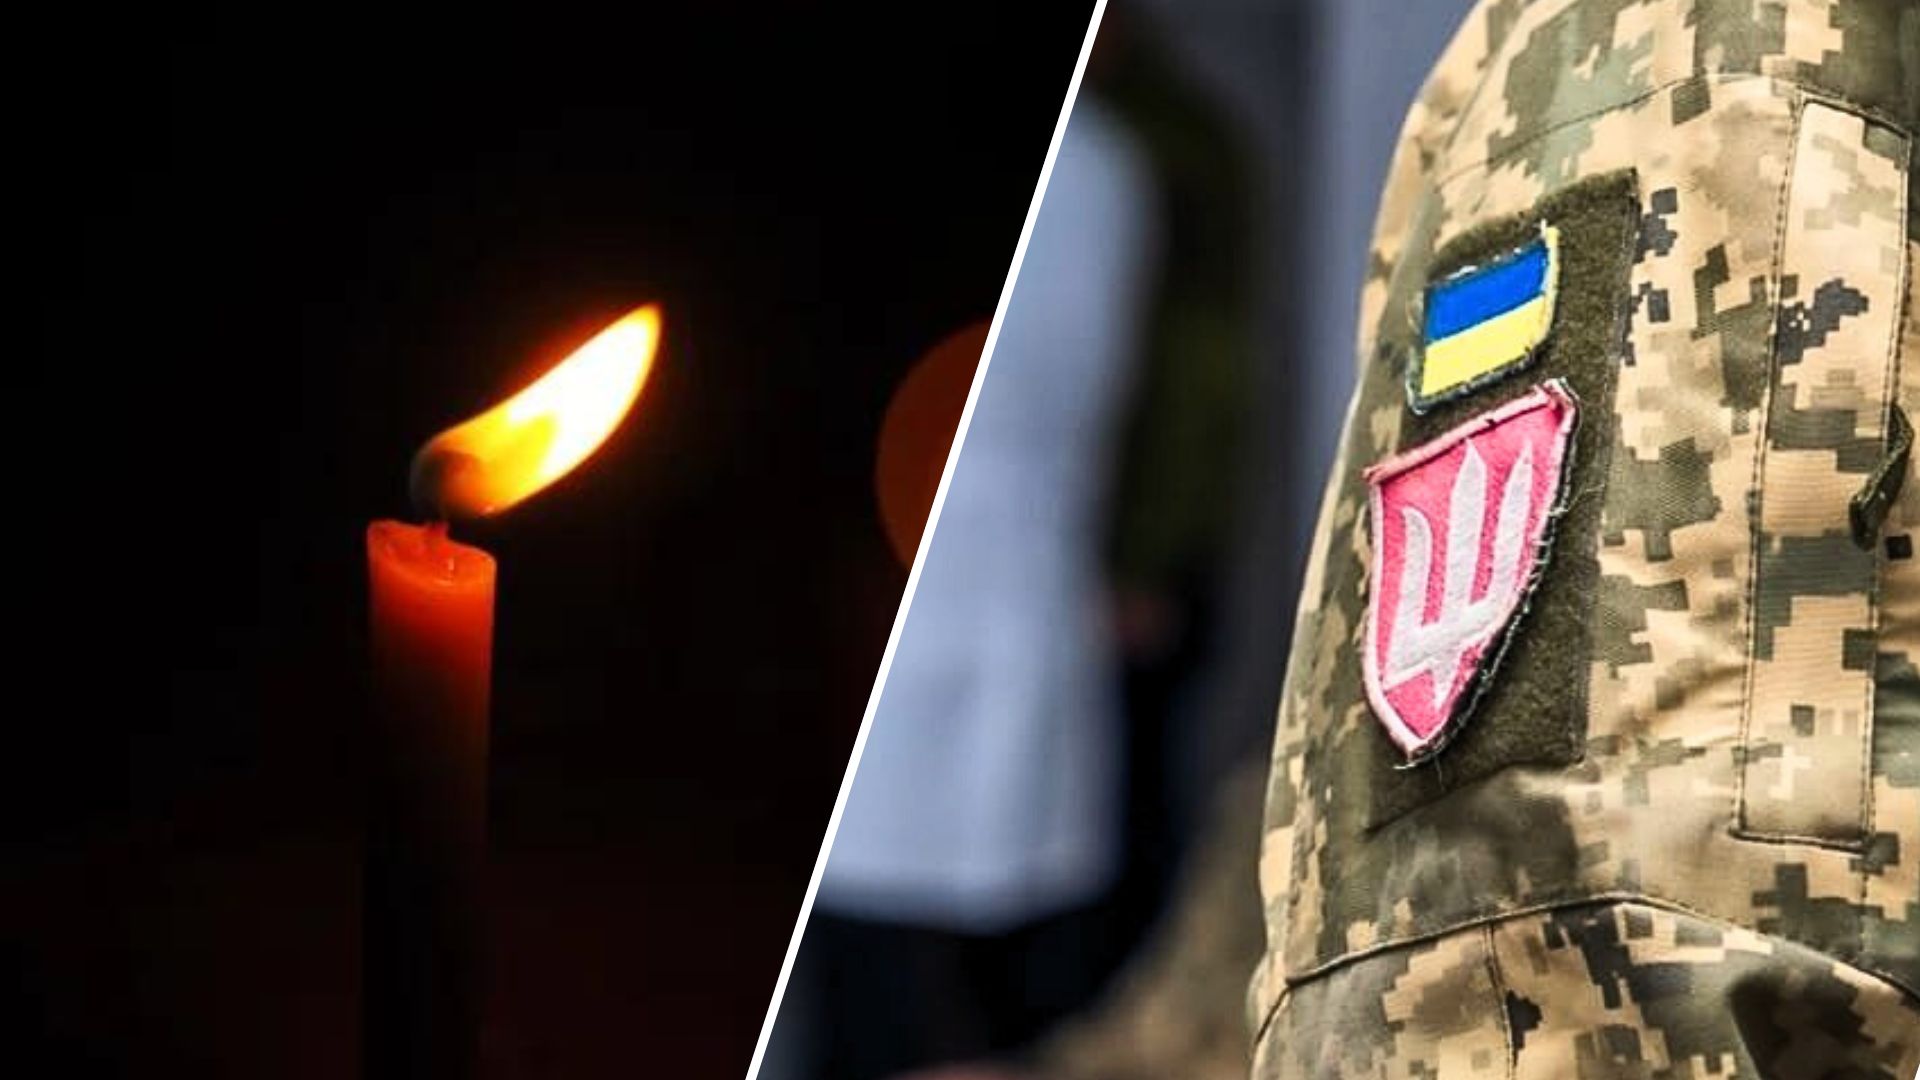 Міністерство закордонних справ України підтверджує дані про те, що два українці, які були вбиті в Німеччині, були військовими, що проходили реабілітацію в Баварії після отриманих поранень.